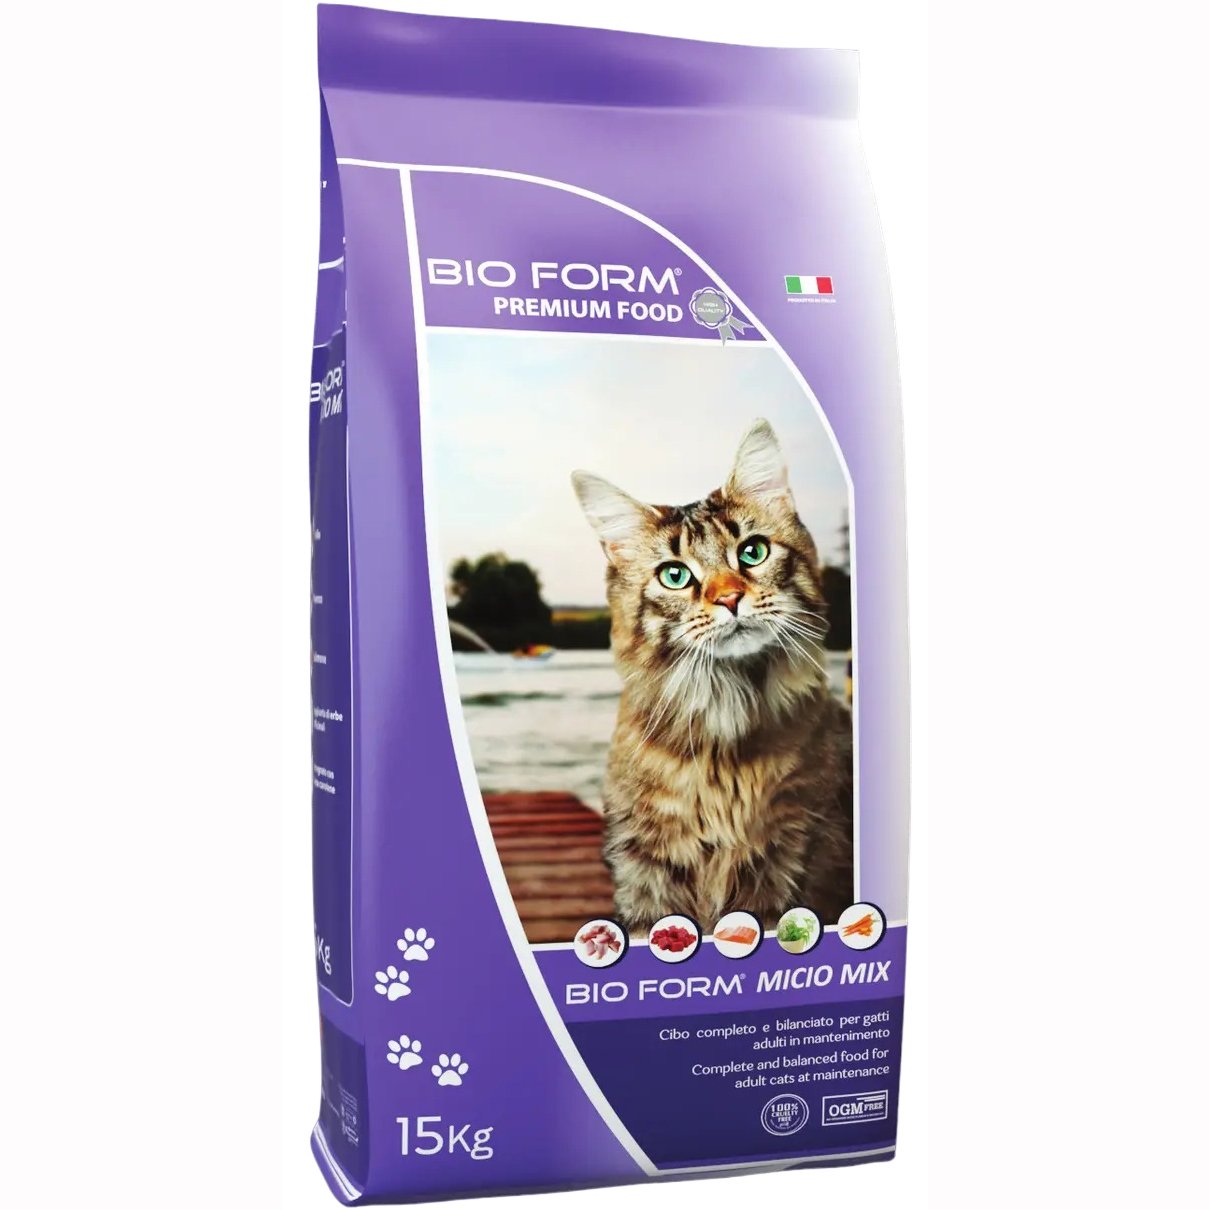 Сухой корм для кошек Bio Form Premium Food Micio Mix с курицей, рыбой и овощами 15 кг - фото 1